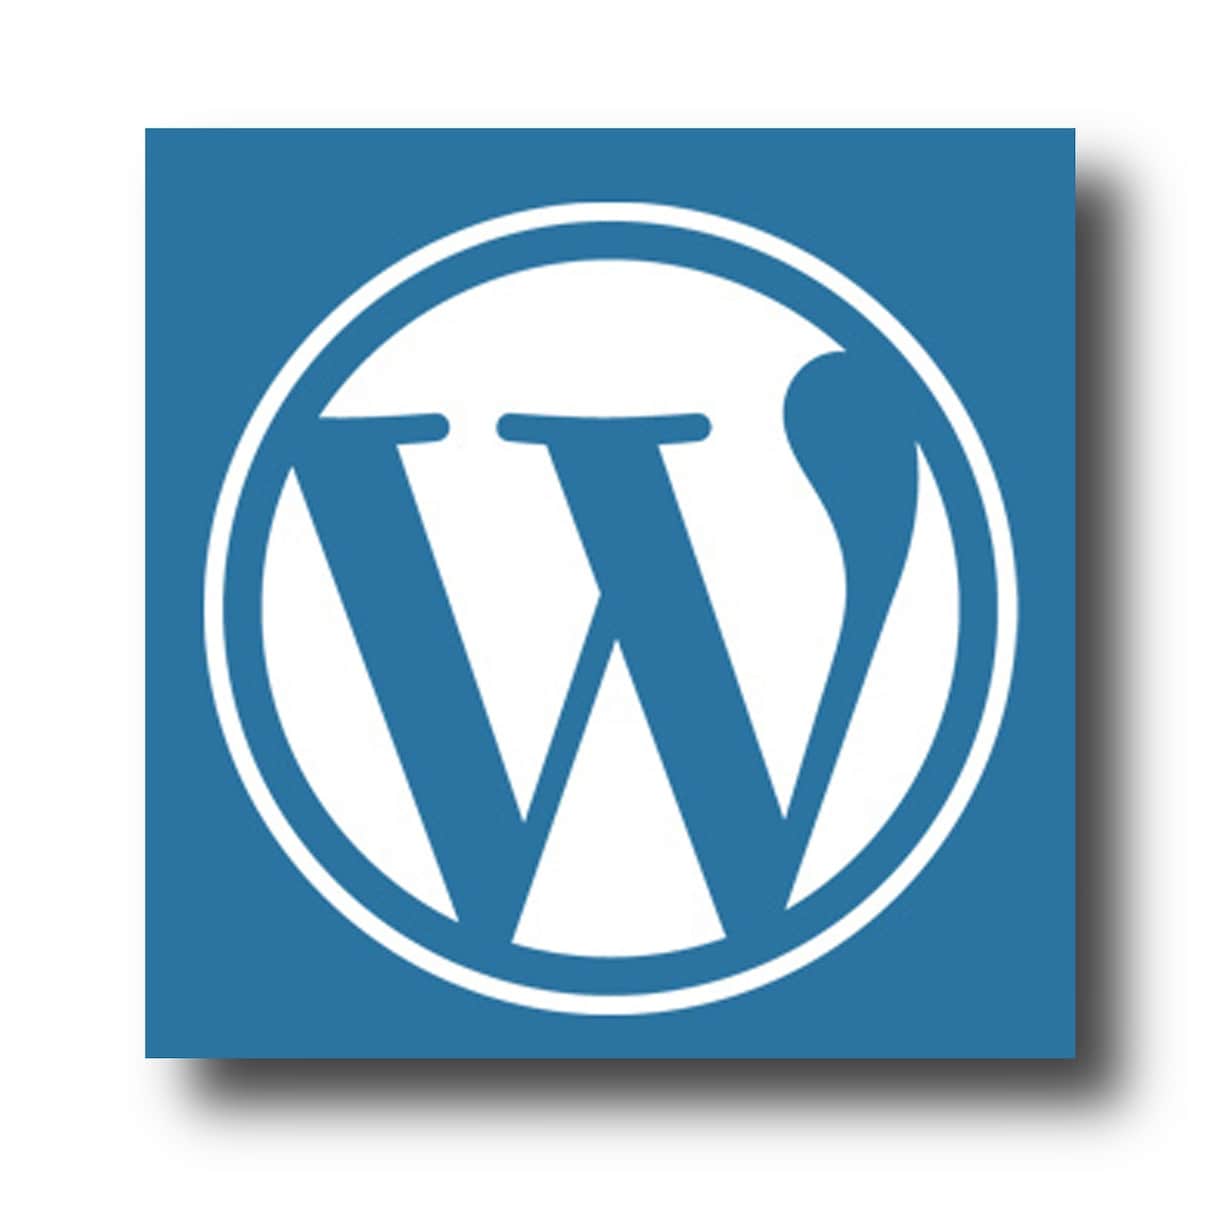 WordPressでレスポンシブ対応HP制作します デザインからコーディングまでレスポンシブ対応HP制作します。 イメージ1